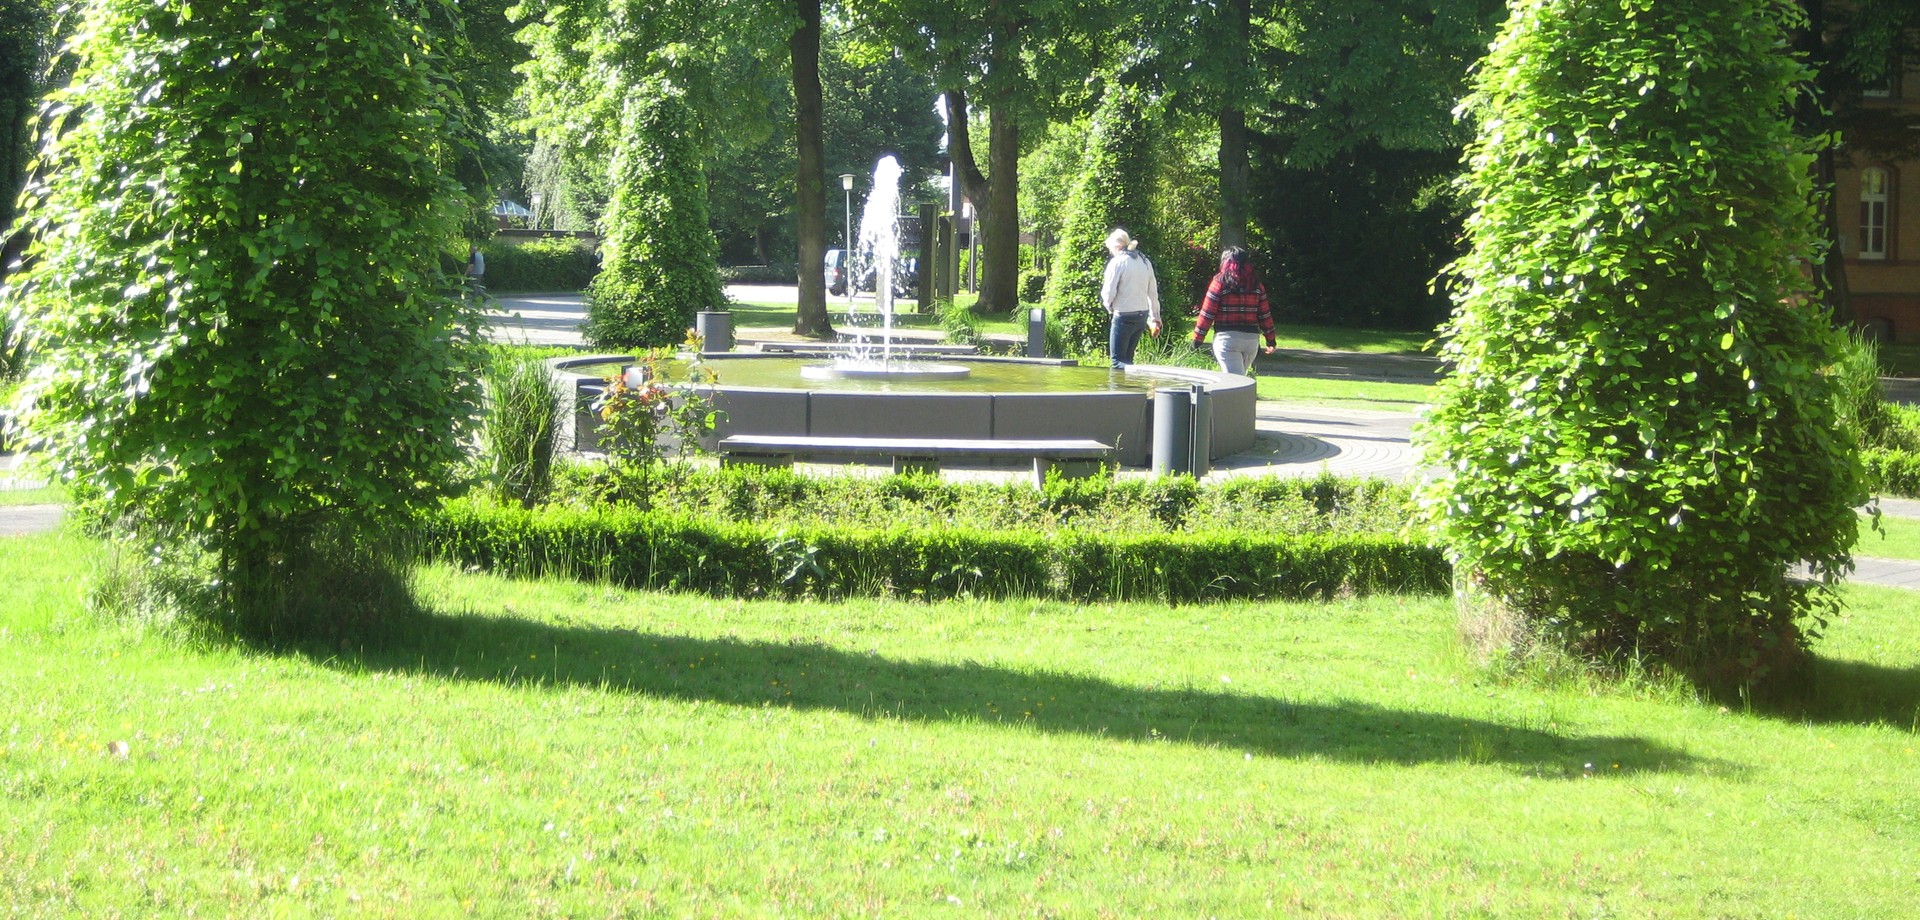 Zwei Frauen gehen an einem sprudelnden Brunnen, der von grünen Bäumen umgeben ist, vorbei. Sie wenden der Kamera den Rücken zu